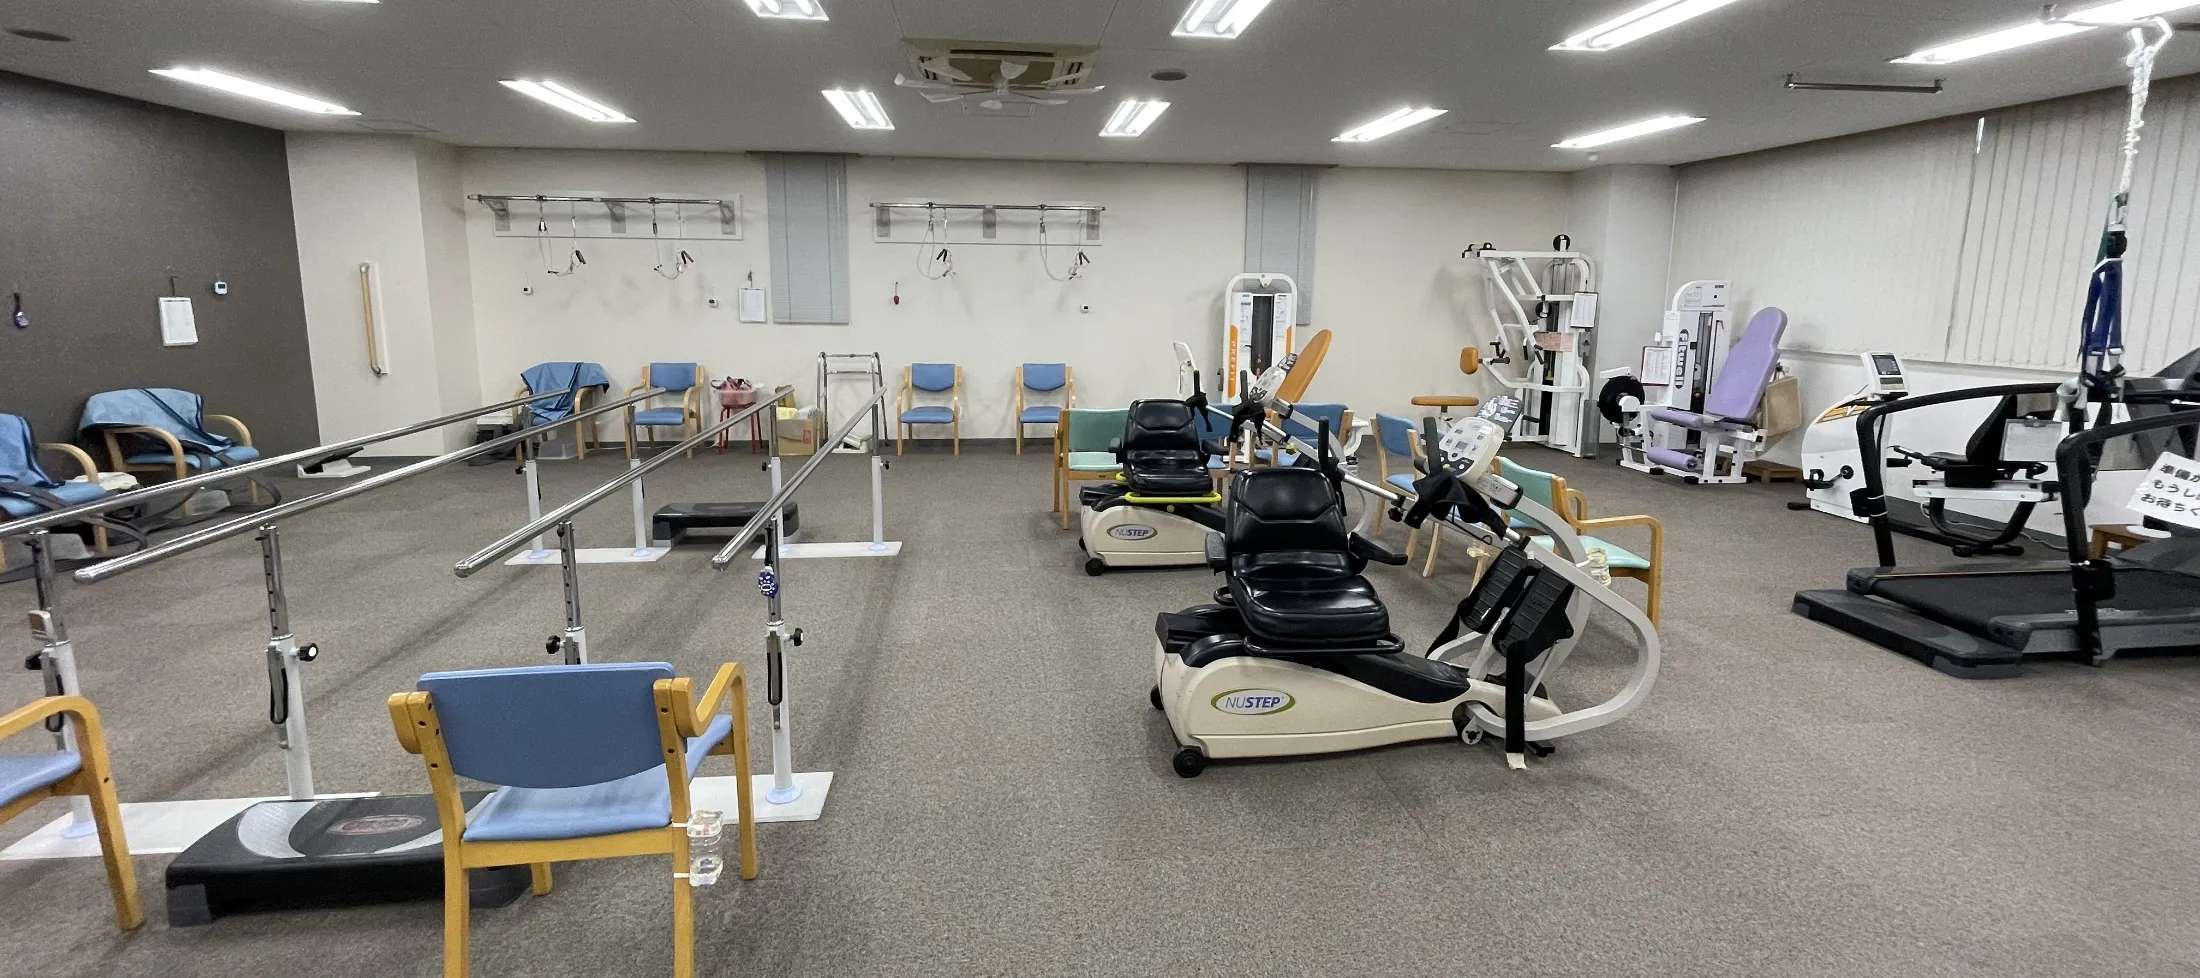 松本デイサービスセンター 高齢者専用運動トレーニングマシン 歩行用トレーニングマシン